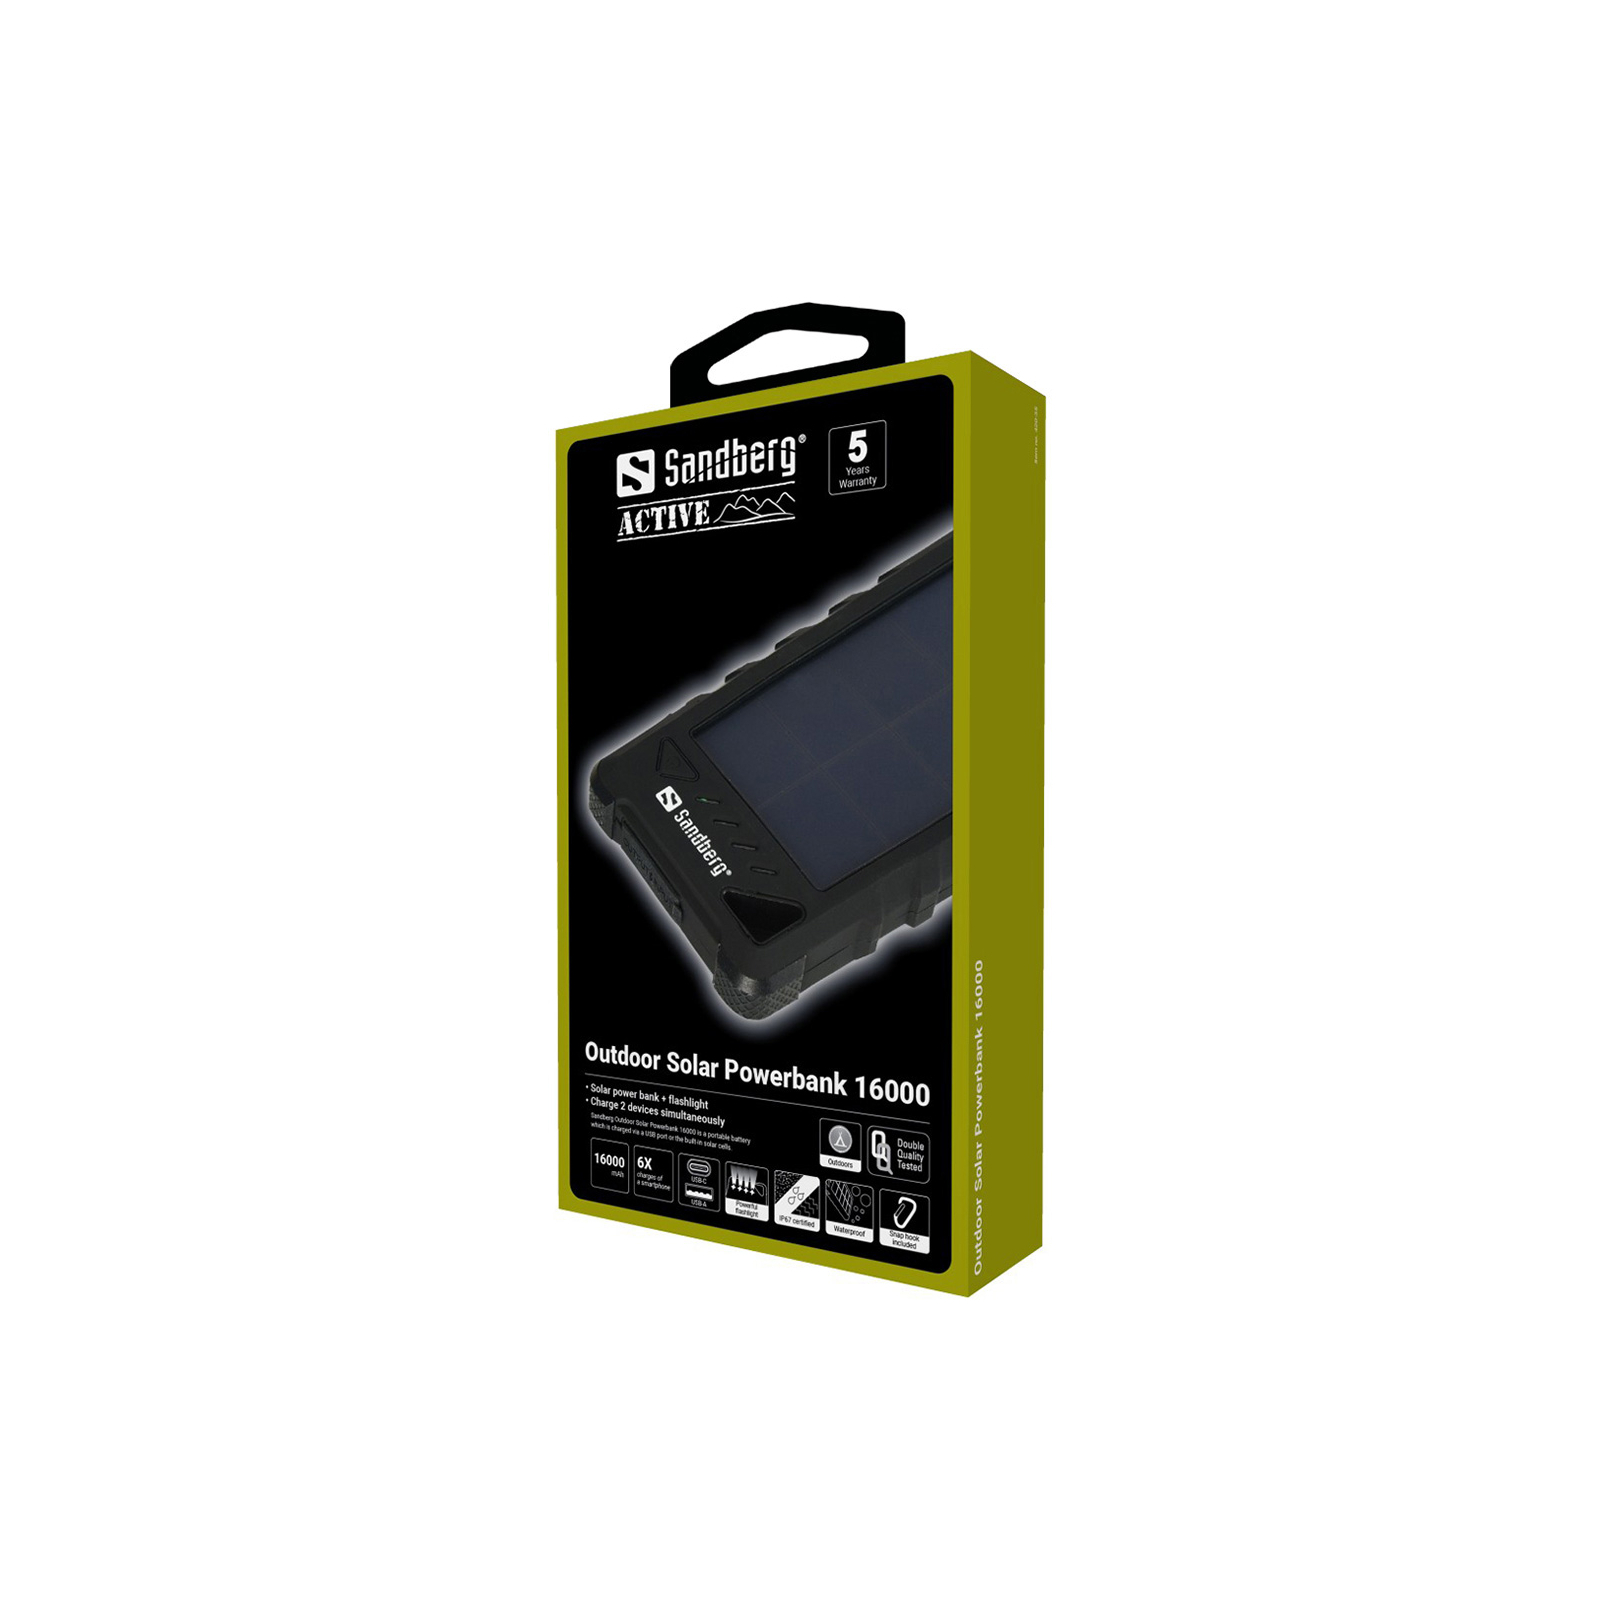 Батарея универсальная Sandberg 16000mAh, Outdoor IP67, Solar Panel 1.4W/280mA, USB-C, USB-A, 5V/3.4A total (420-35) изображение 3